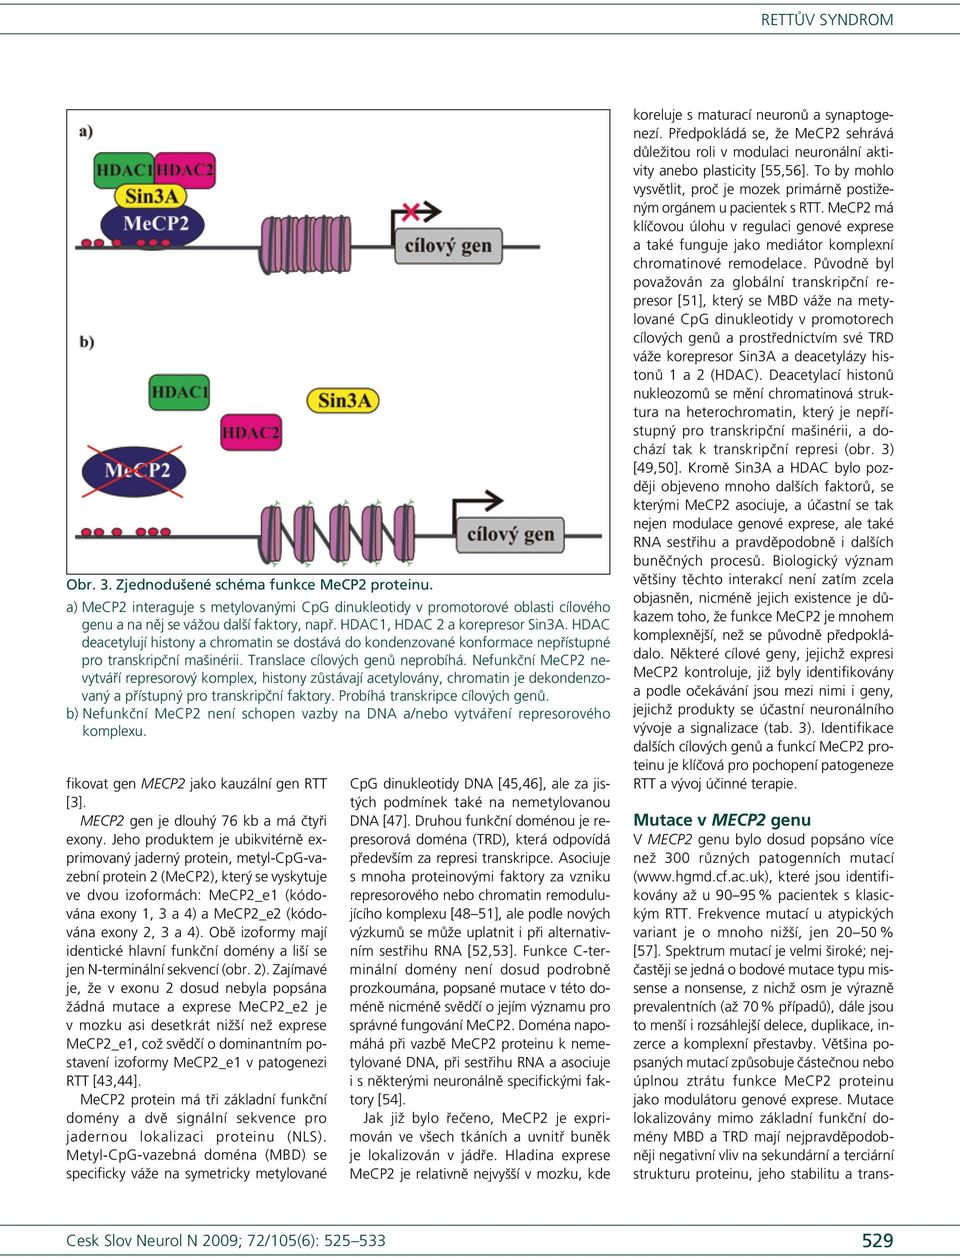 Nefunkční MeCP2 nevytváří represorový komplex, histony zůstávají acetylovány, chromatin je dekondenzovaný a přístupný pro transkripční faktory. Probíhá transkripce cílových genů.